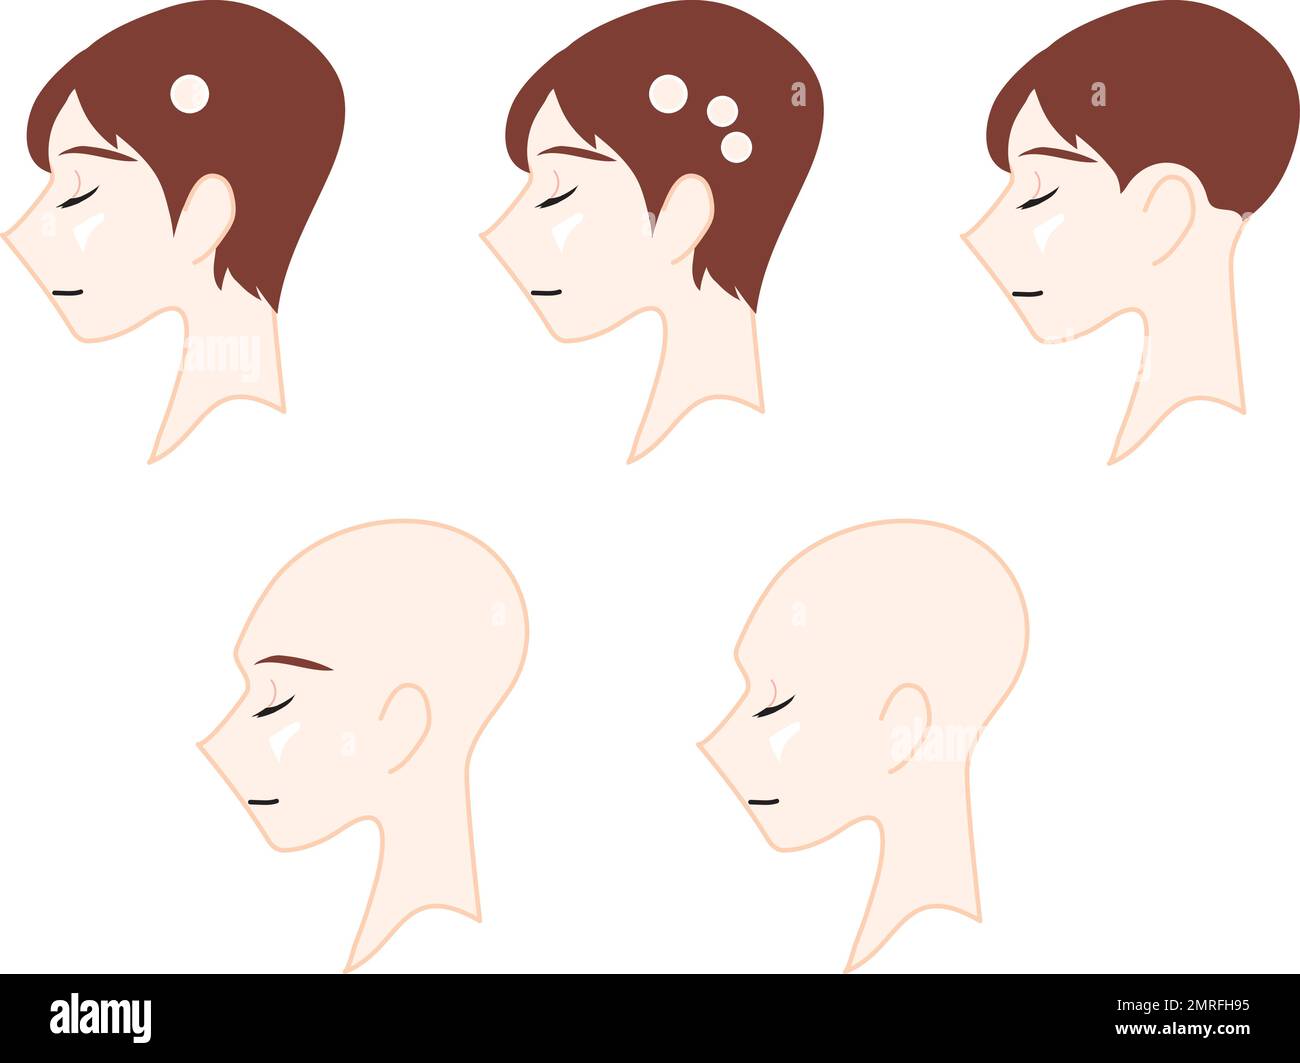 Das Profil einer neutralen Person, die den Typ der Alopezie darstellt. Medizinische Illustration. Stock Vektor